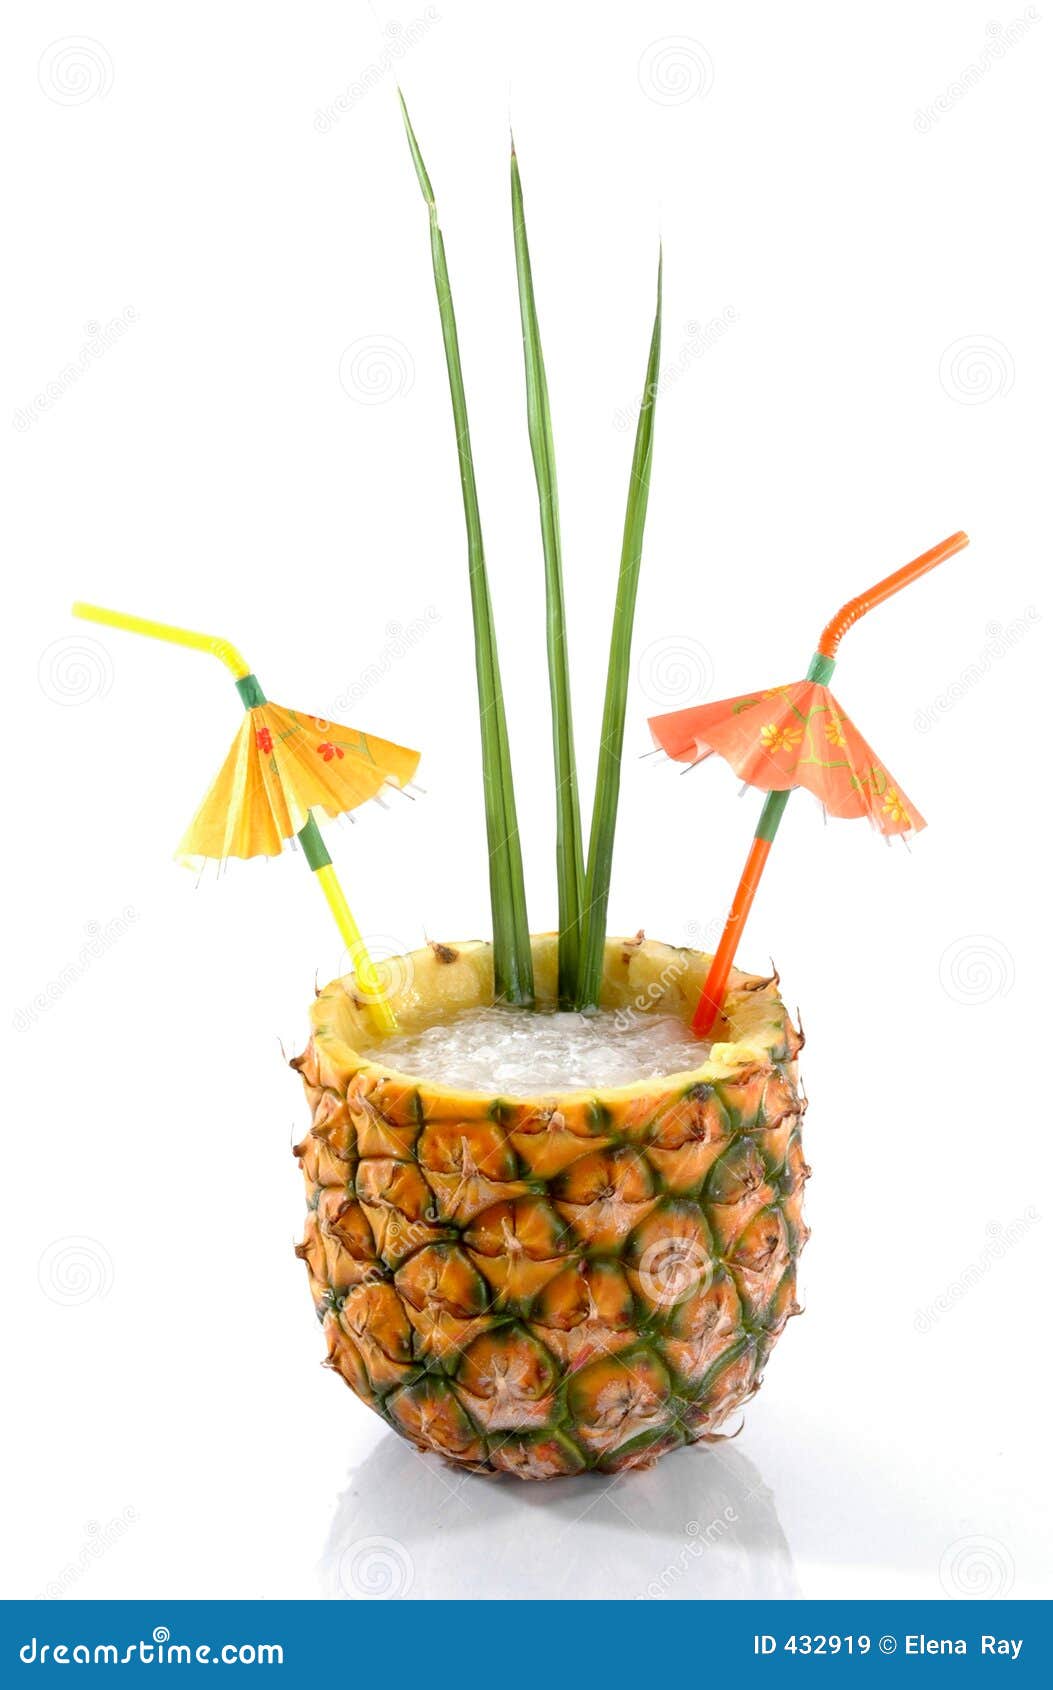 Bebida tropical 1 de la piña. La piña natural ahuecó hacia fuera y llenó de una bebida helada con los paraguas tropicales y las hojas de palma aislados en un fondo blanco.